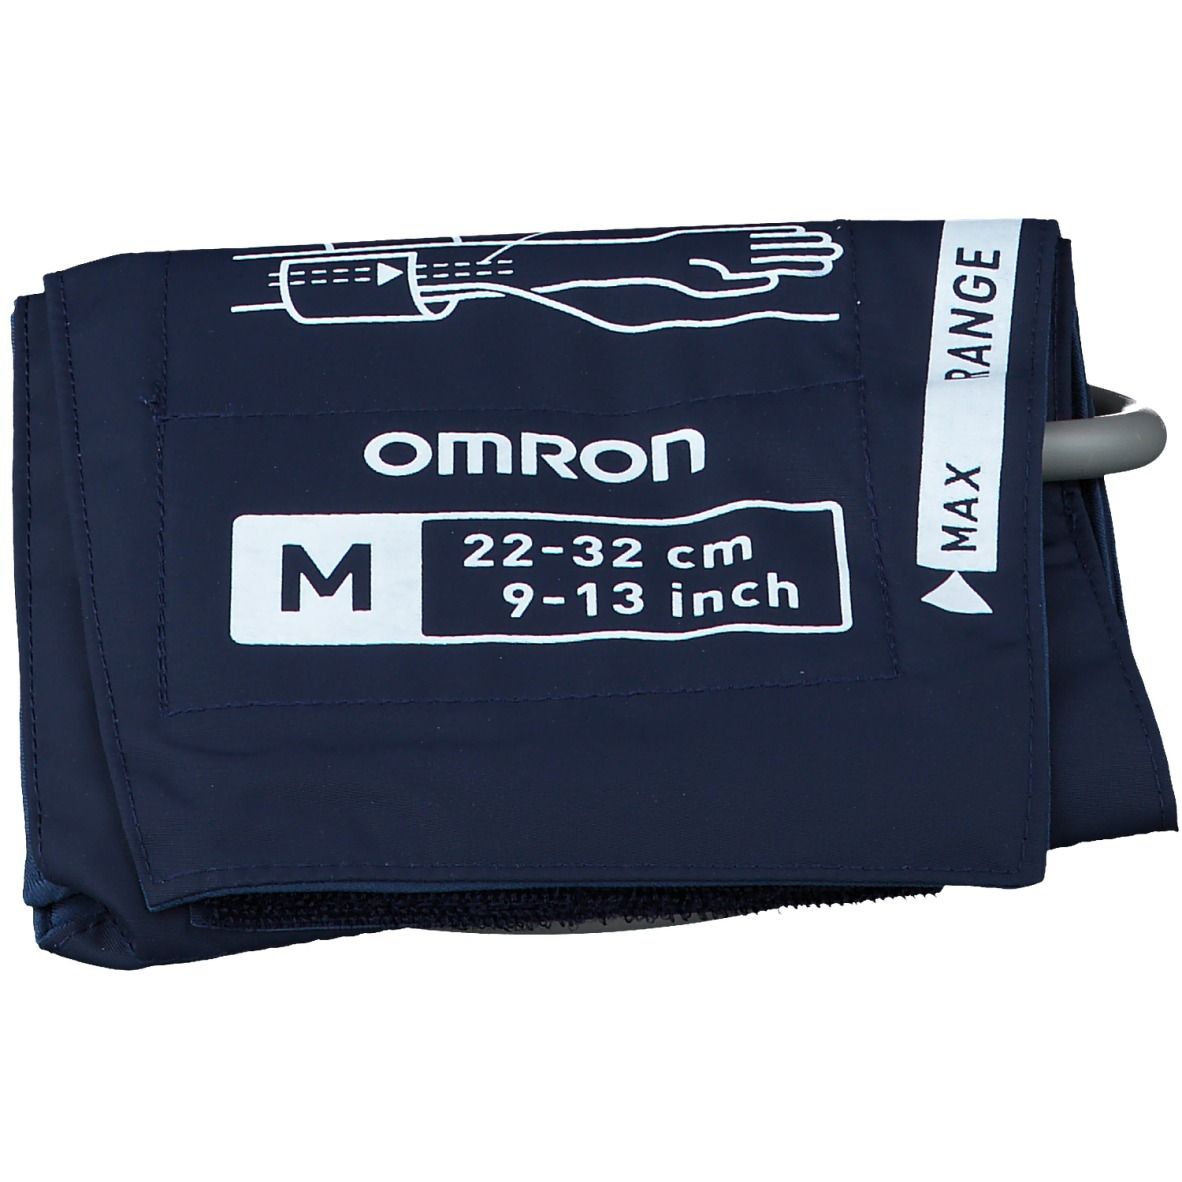 OMRON Manschette für HBP 1100 + 1300 Gr. M